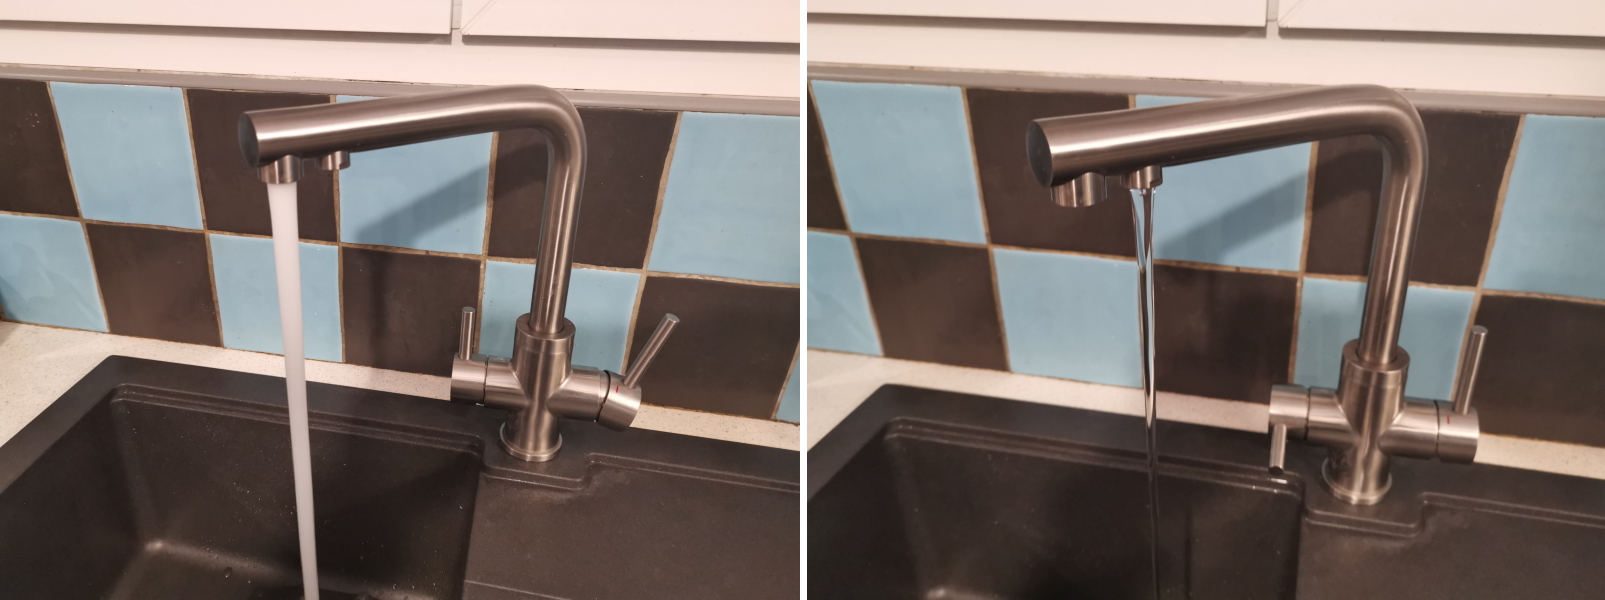 3-way kitchen tap installed